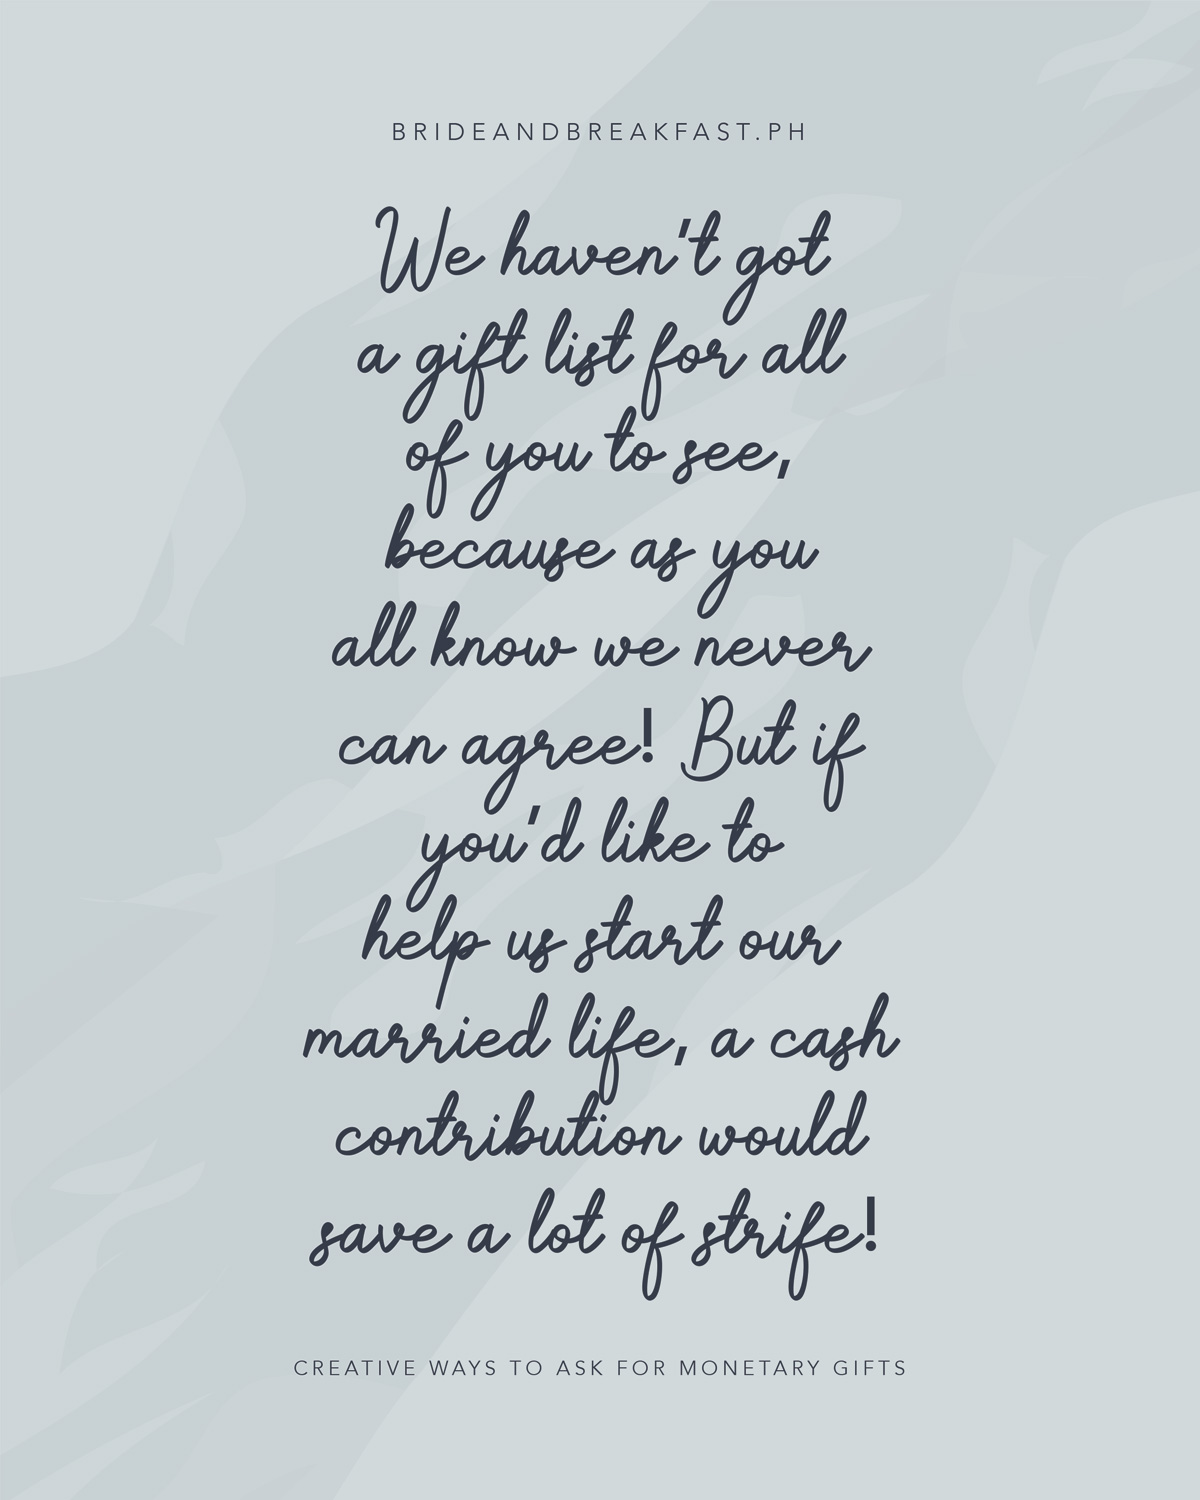 Vi har ikke fått en gaveliste for alle dere å se, fordi som dere alle vet vi aldri kan bli enige! Men hvis du vil hjelpe oss med å starte vårt ekteskap, vil et kontantbidrag spare mye strid!